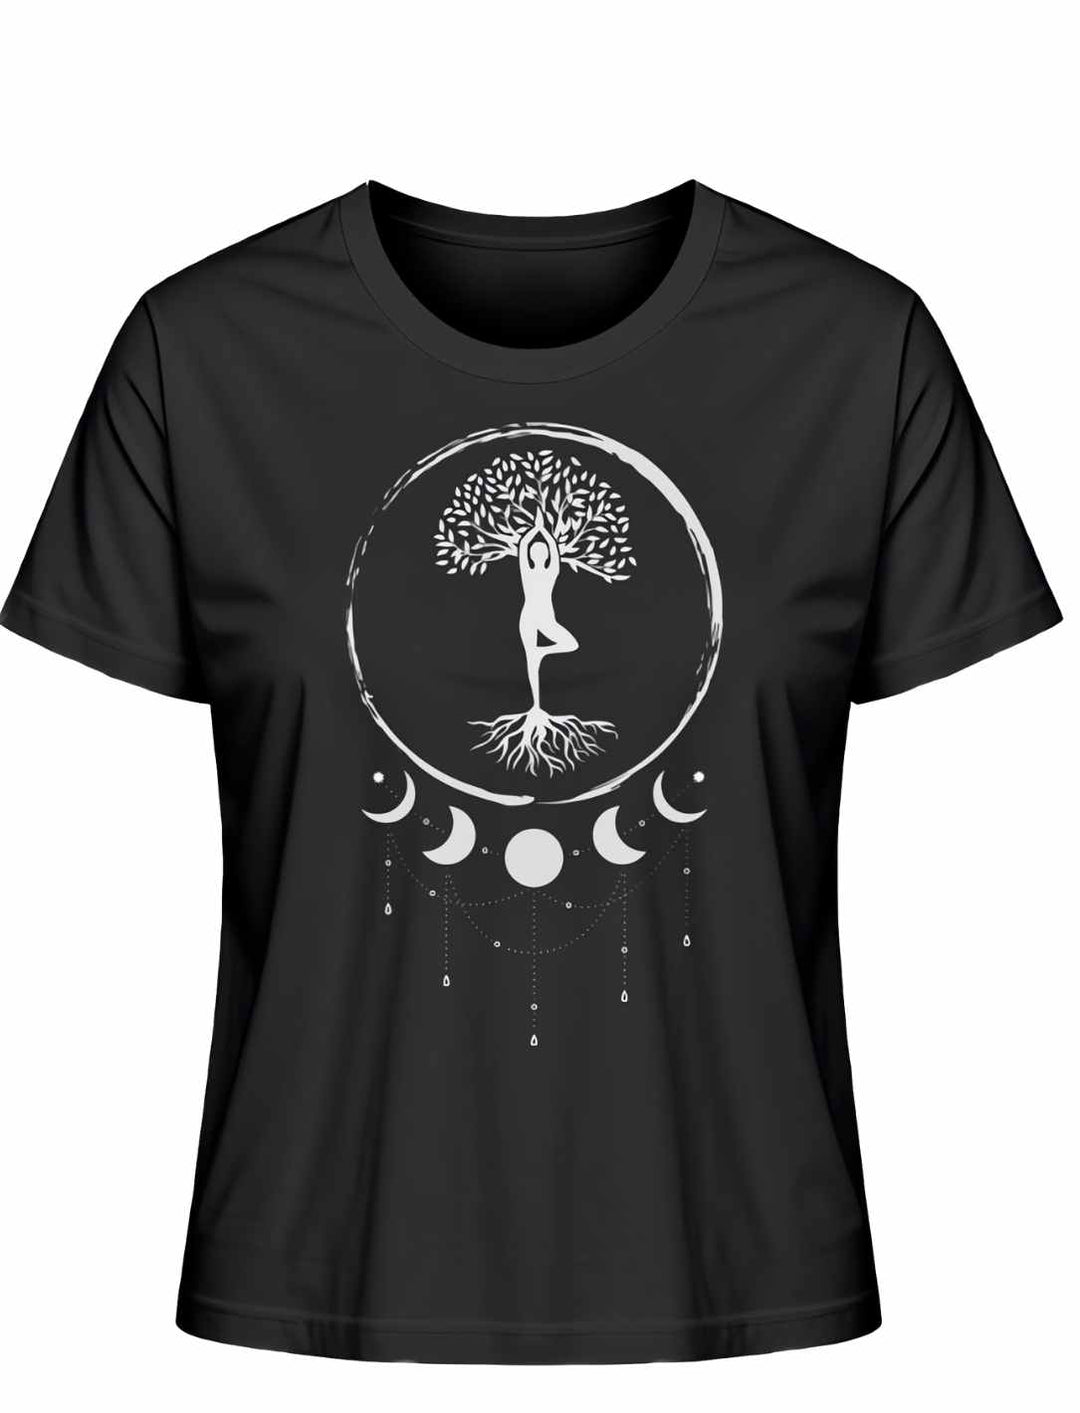 Seelenbaum der Mondträumer T-Shirt in Schwarz, Liegedarstellung auf weißem Hintergrund - Runental.de